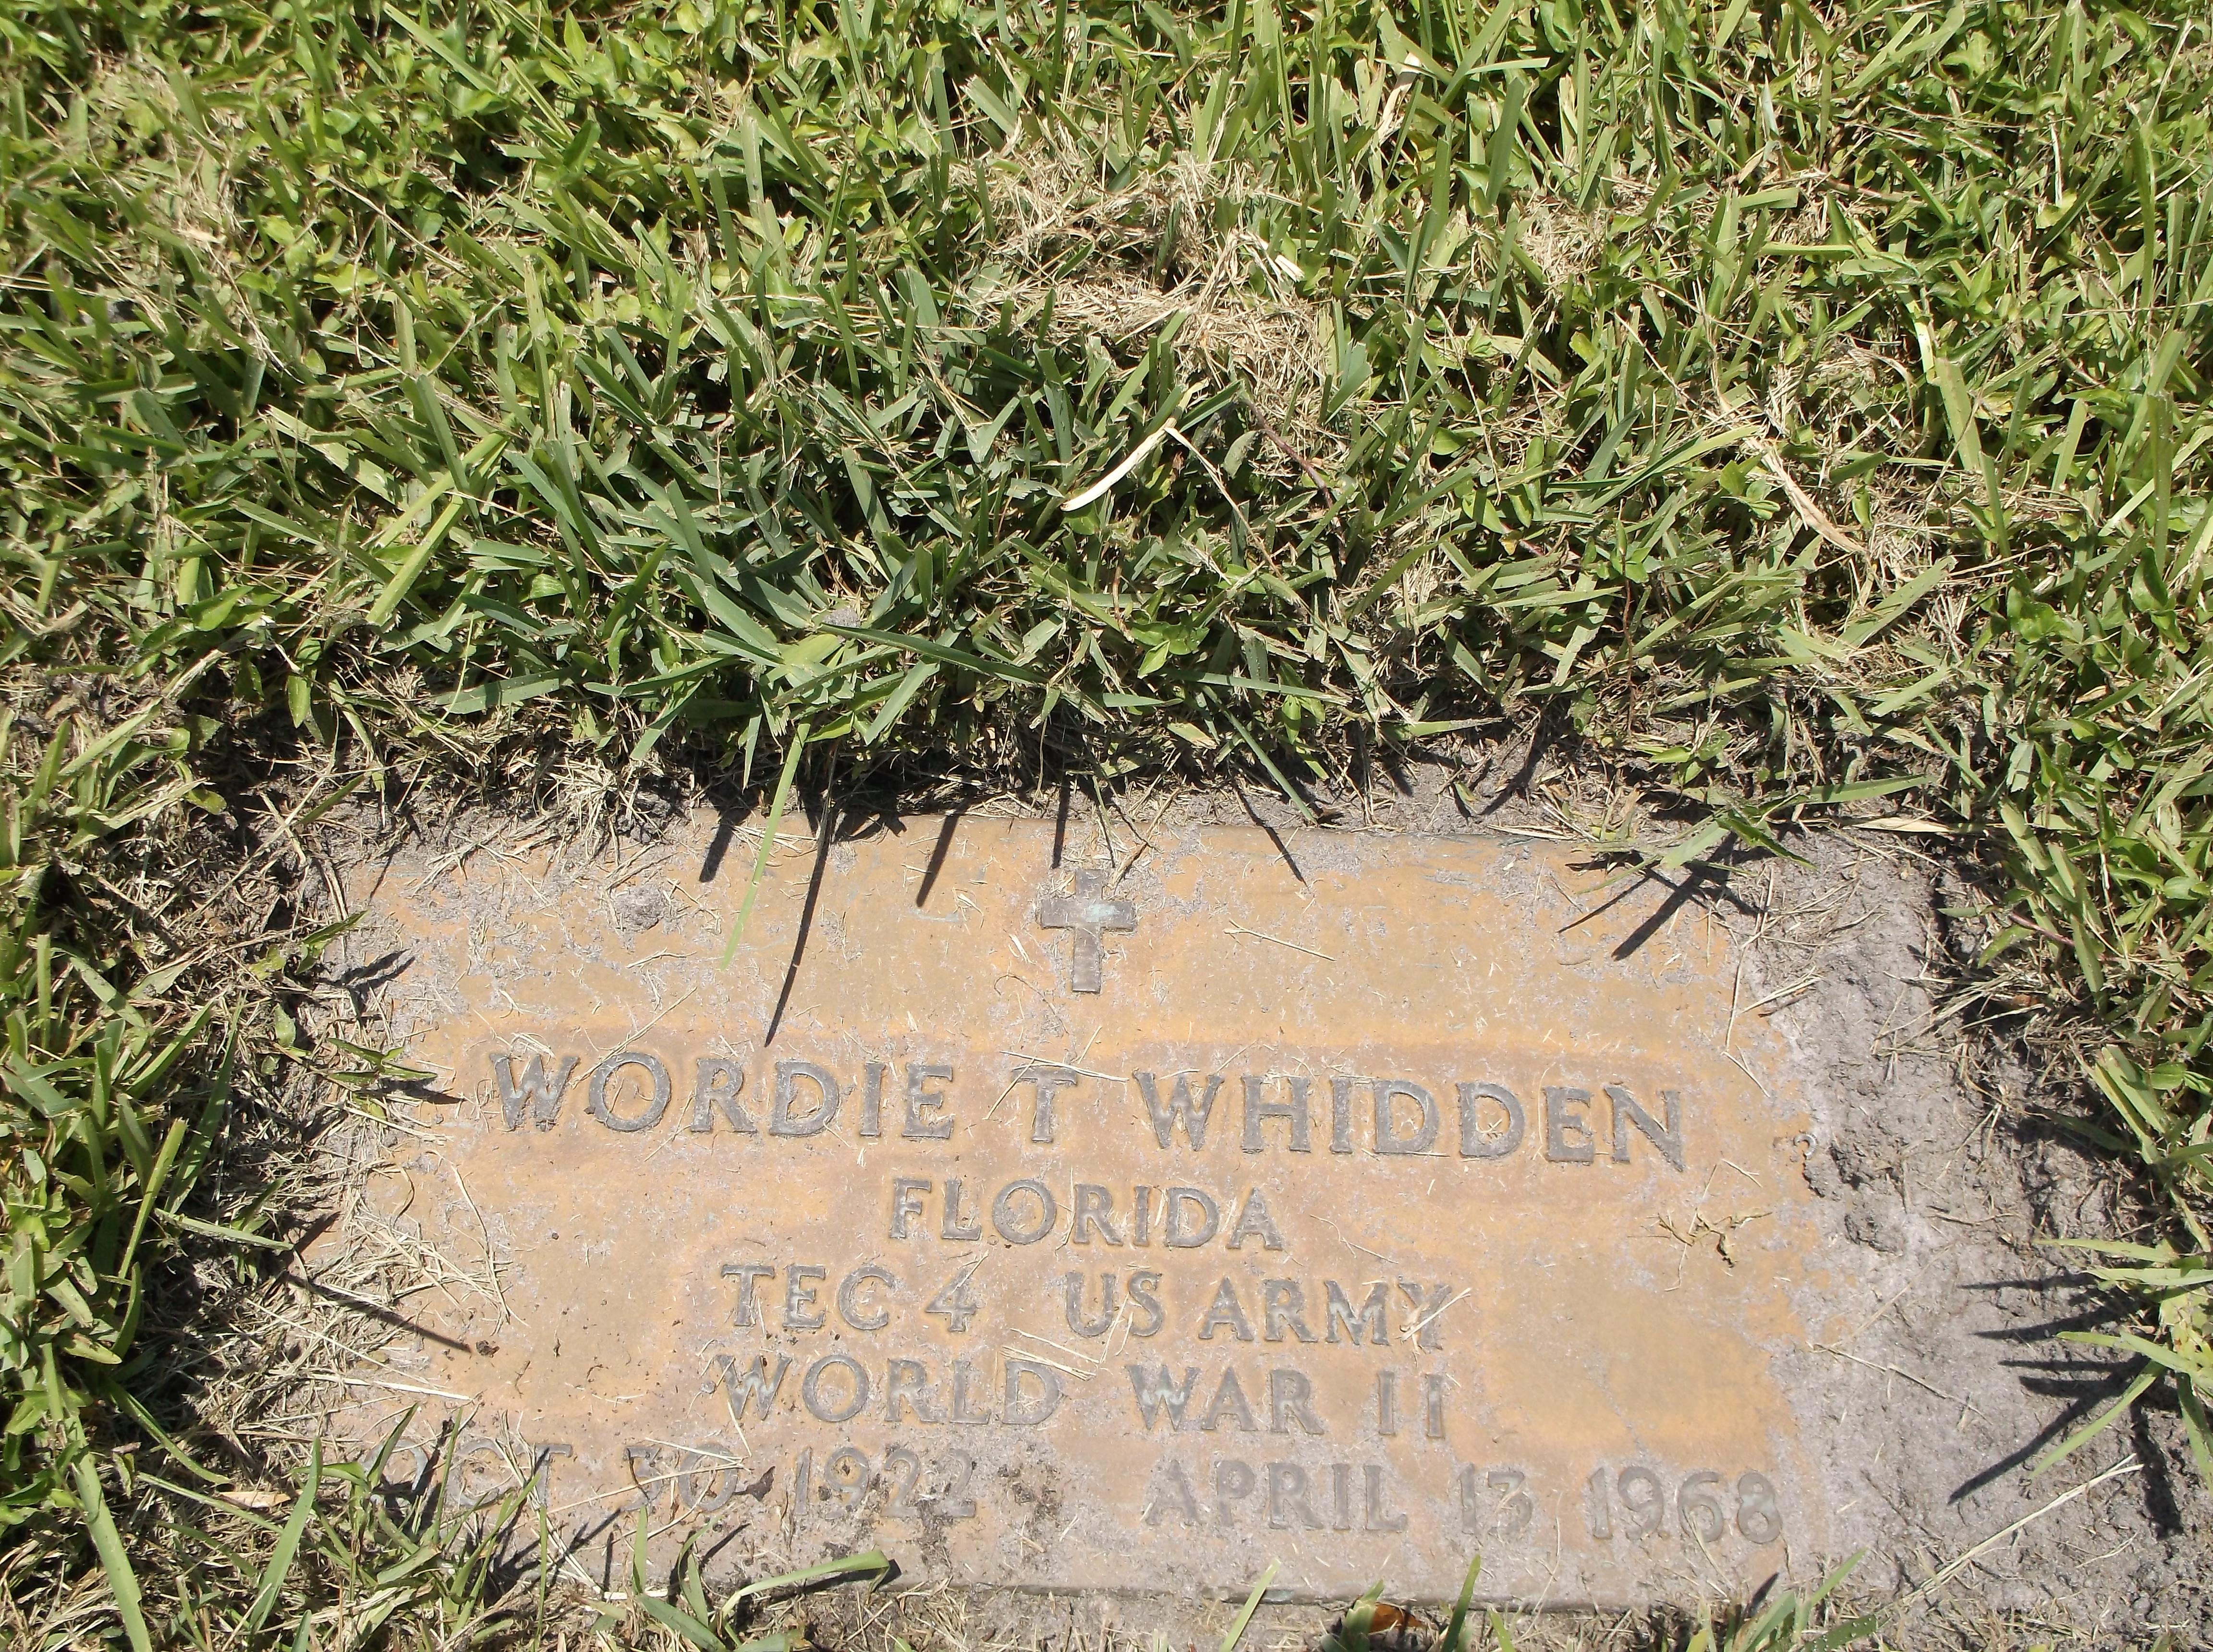 Wordie T Whidden